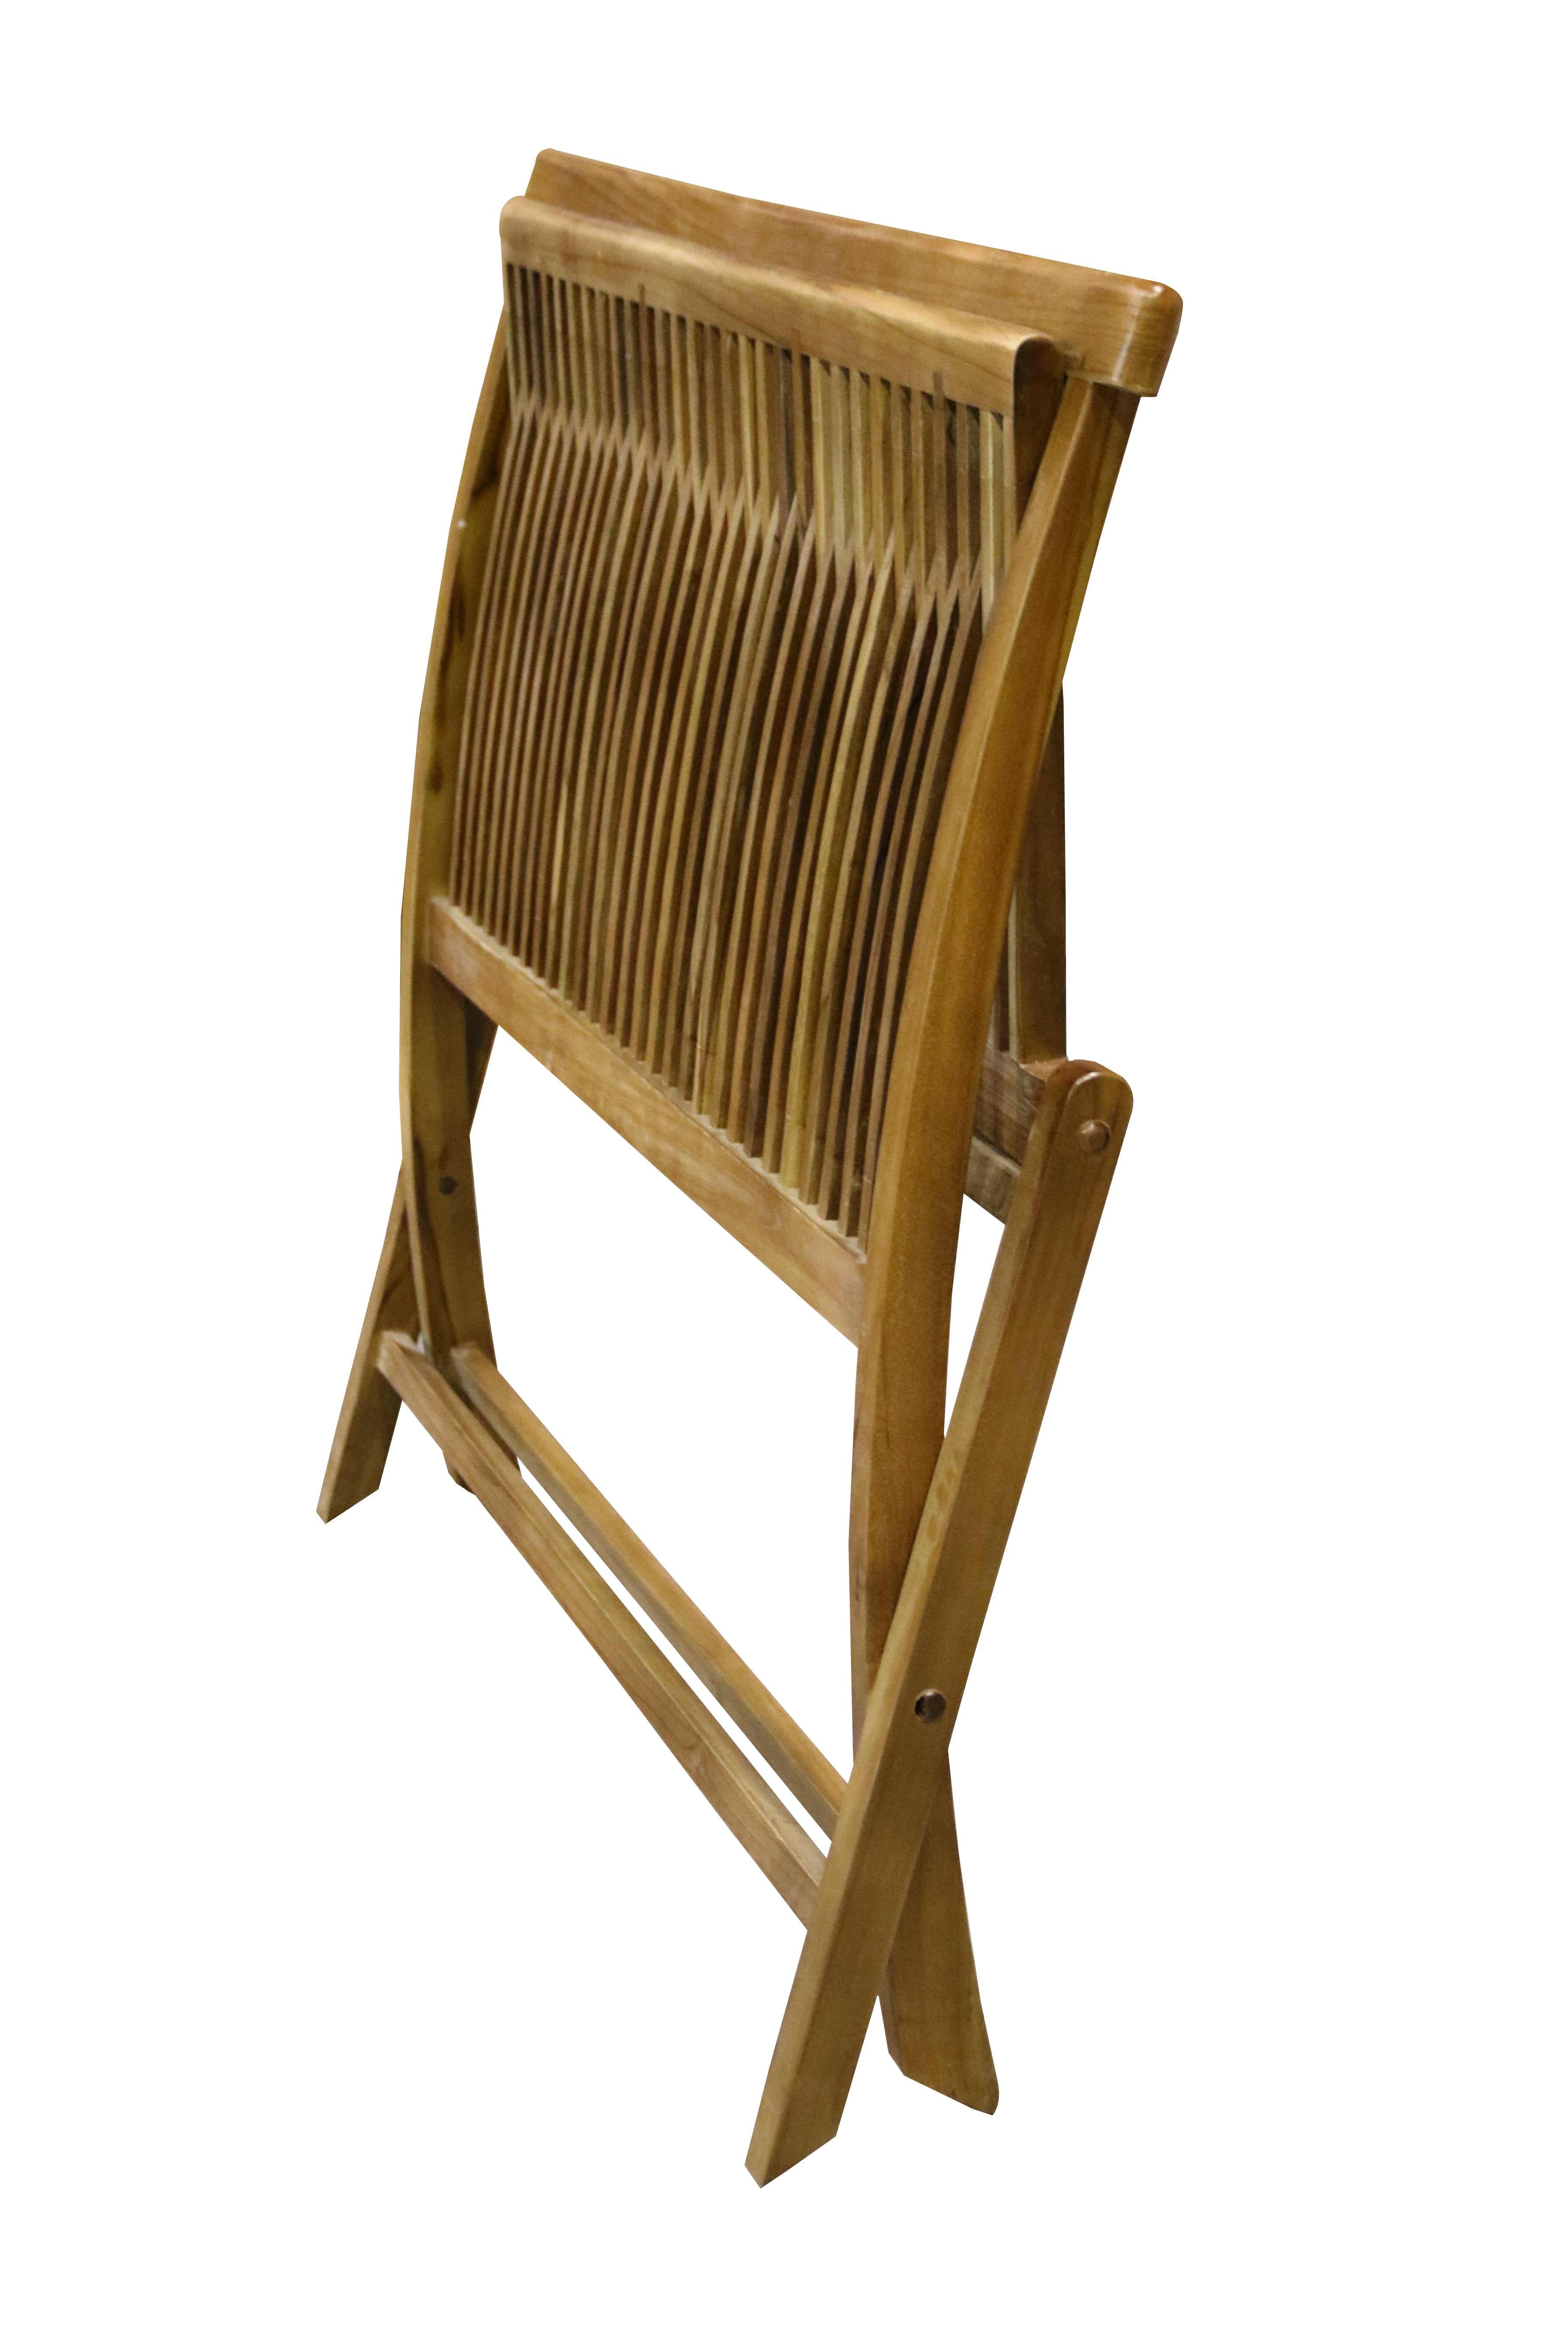 Ala Teak Wood indoor Outdoor Patio Garden Yard Folding Chair Seat Teak Chair